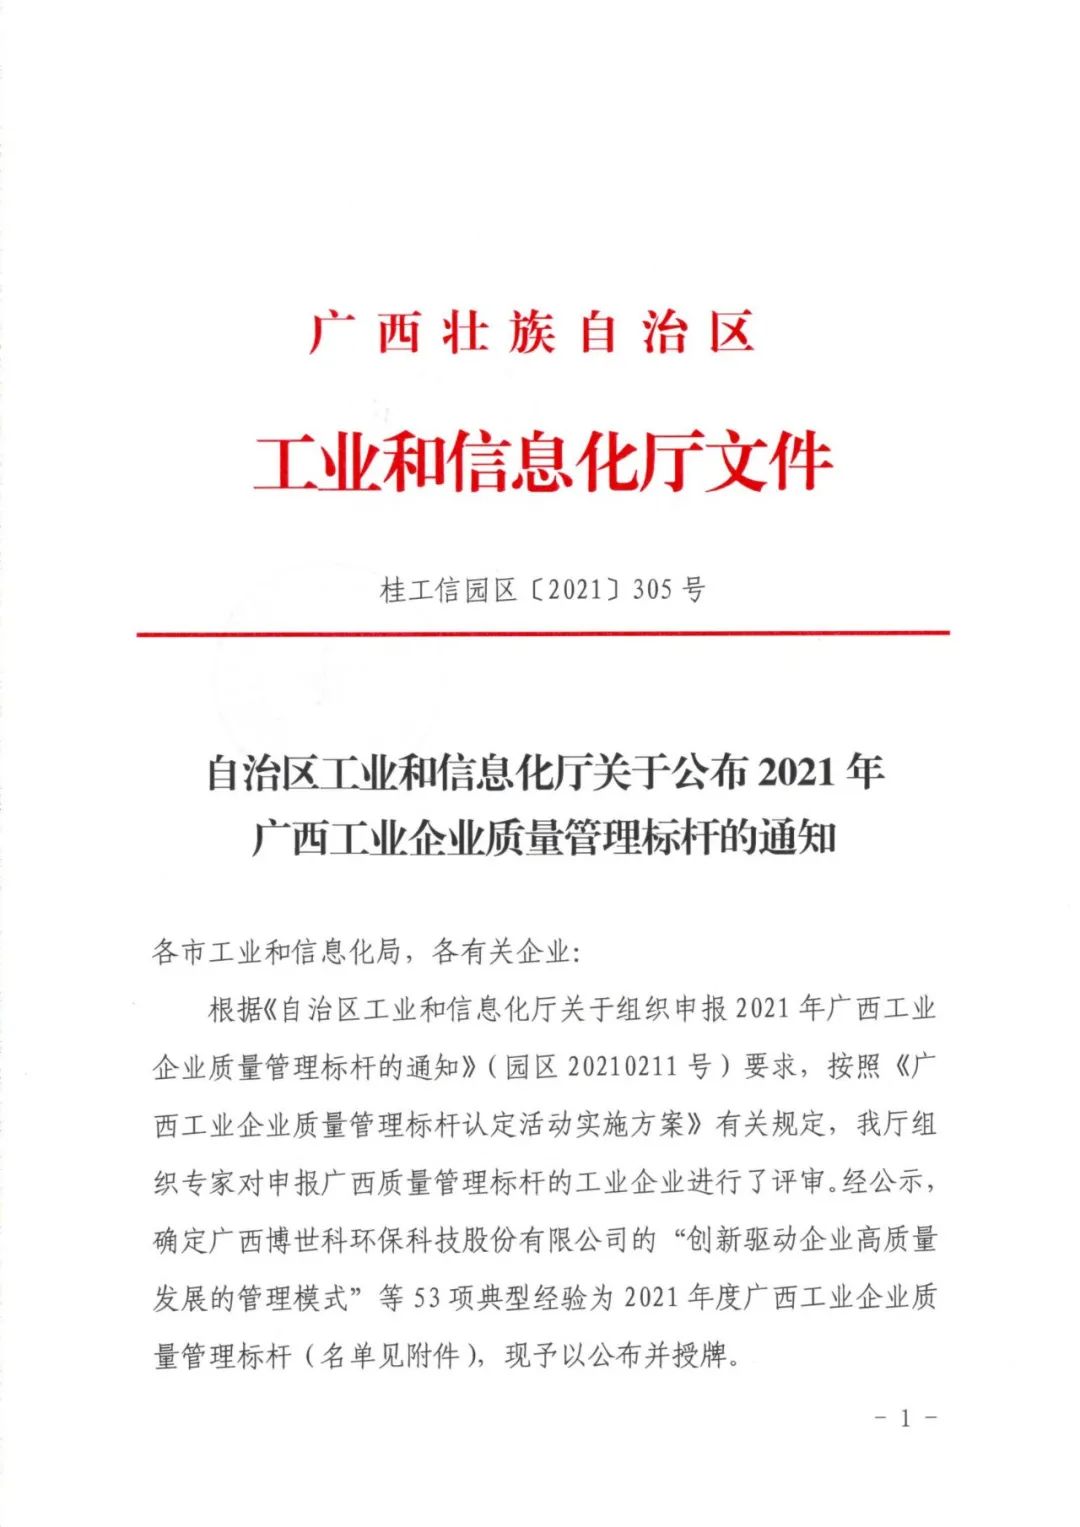 桂林南药荣获2021年度广西工业企业质量管理标杆